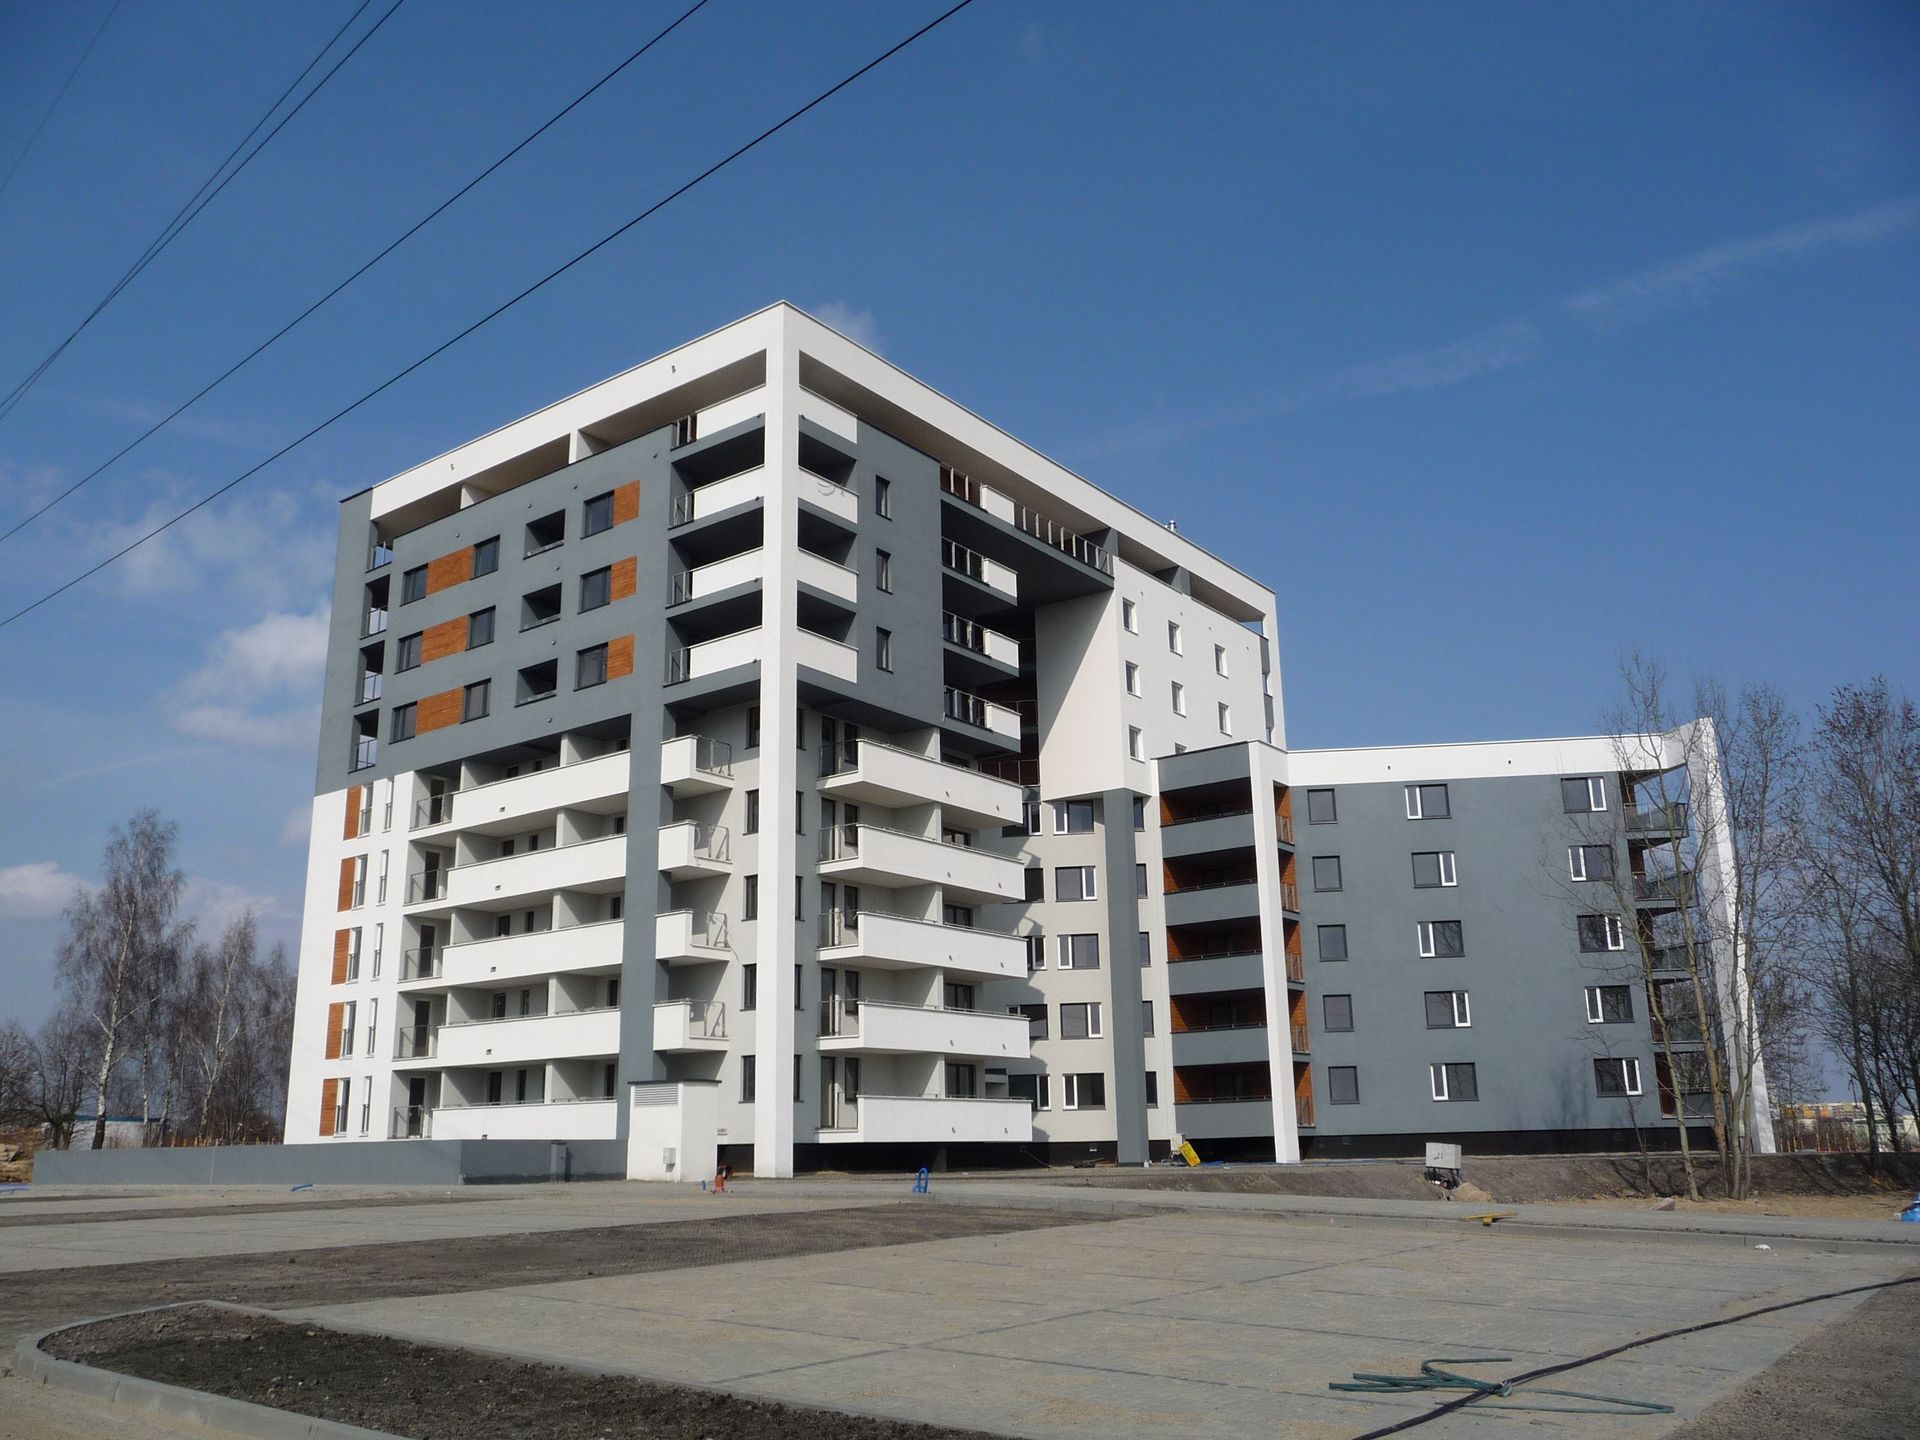  Wikana ogłasza konkurs na projekt nowego budynku w Lublinie